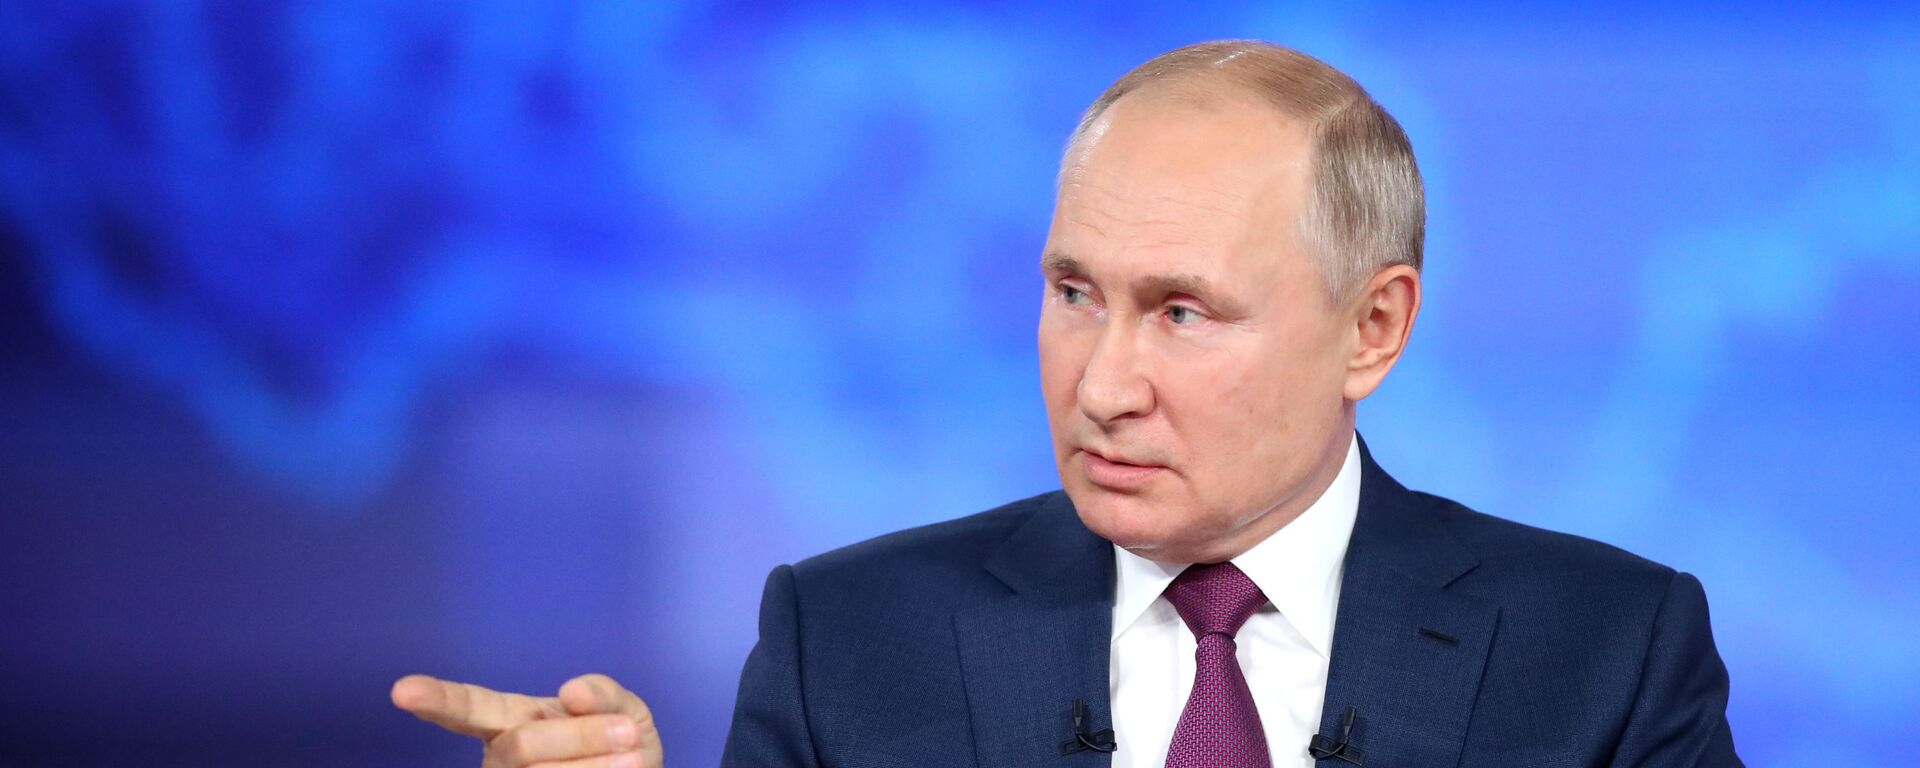 Президент РФ Владимир Путин отвечает на вопросы россиян во время программы Прямая линия  - Sputnik Южная Осетия, 1920, 06.07.2021